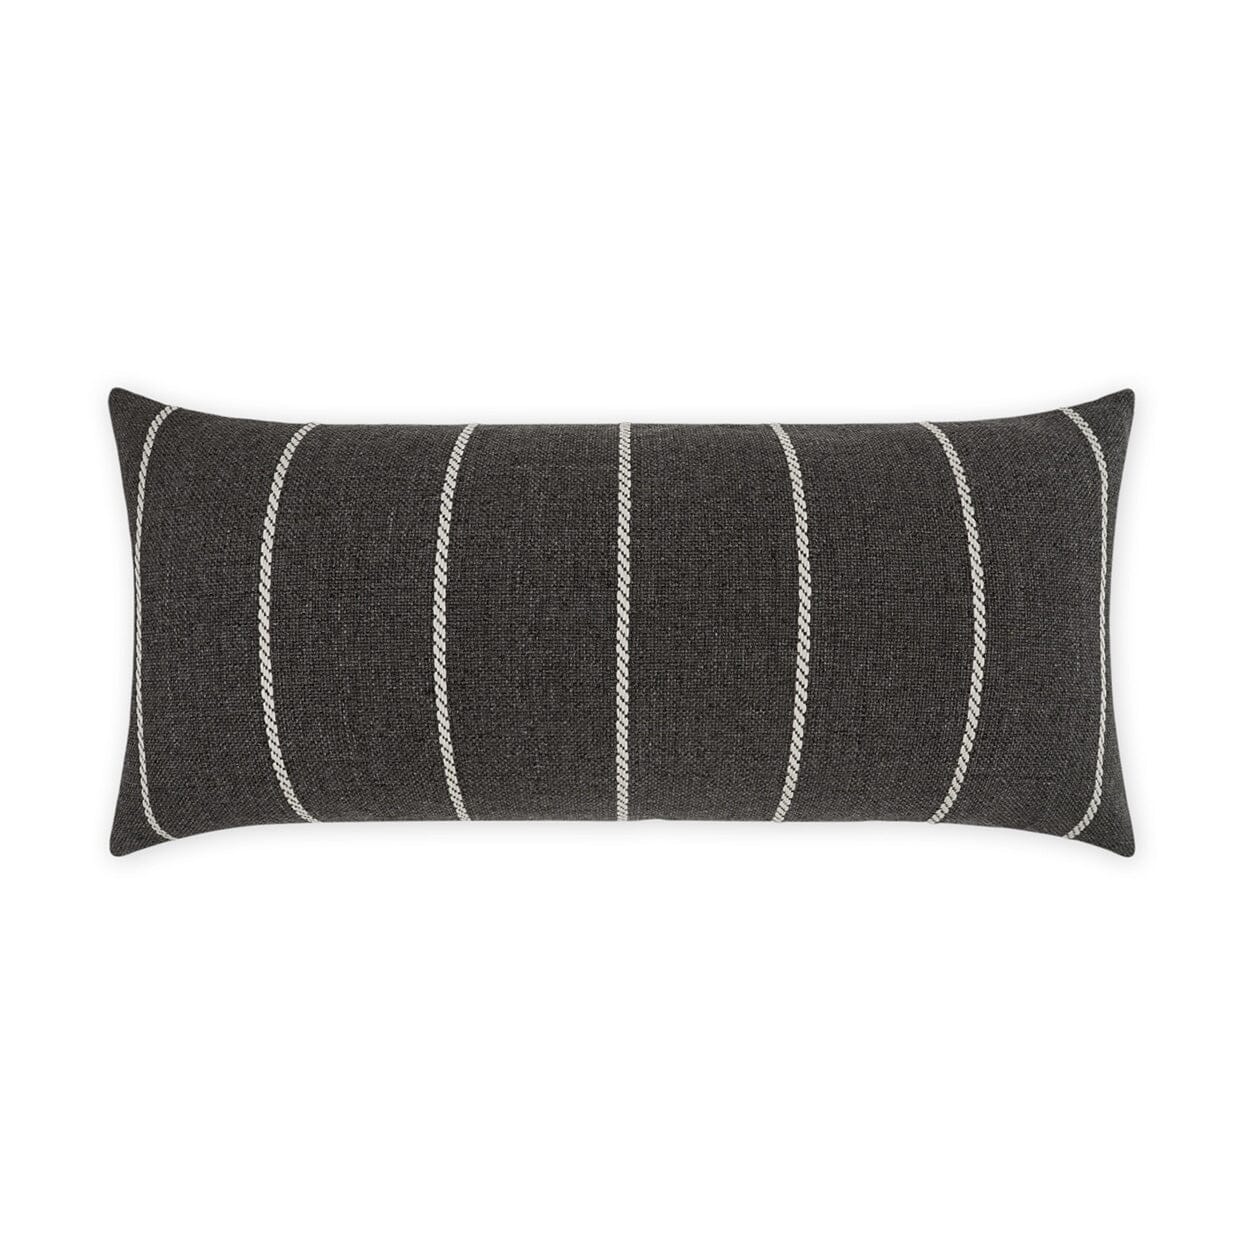 D.V. Kap 12" x 24" Outdoor Lumbar Pillow | Pencil Carbon Lumbar Pillows D.V Kap Home